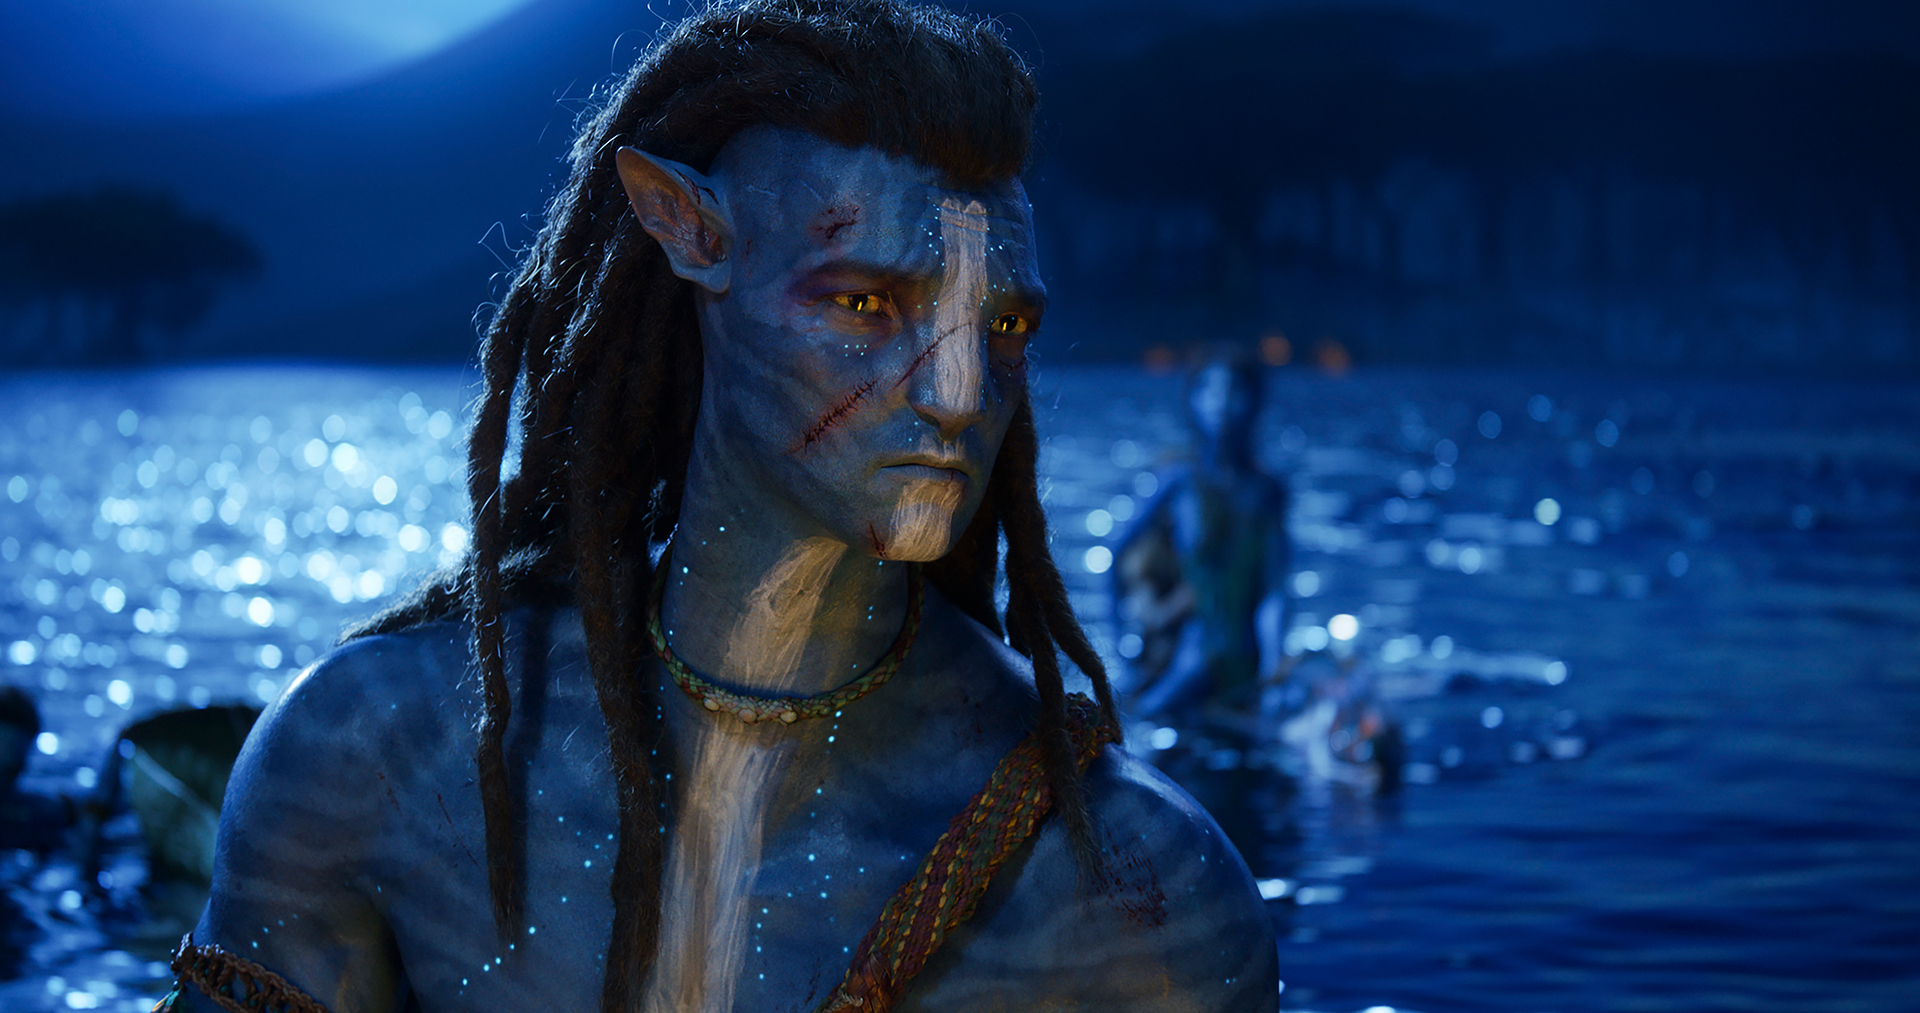 Sau hơn một thập kỷ chờ đợi, Avatar: The Way of Water sắp được ra mắt và trailer mới nhất đã làm người hâm mộ đứng ngồi không yên. Với những hình ảnh đẹp mắt cùng câu chuyện đầy cảm hứng, phần tiếp theo của loạt phim nổi tiếng này hứa hẹn sẽ đưa khán giả vào một thế giới mới đầy thách thức. Hãy xem trailer và sẵn sàng tới rạp chiếu để thưởng thức phim ngay khi nó được công chiếu!